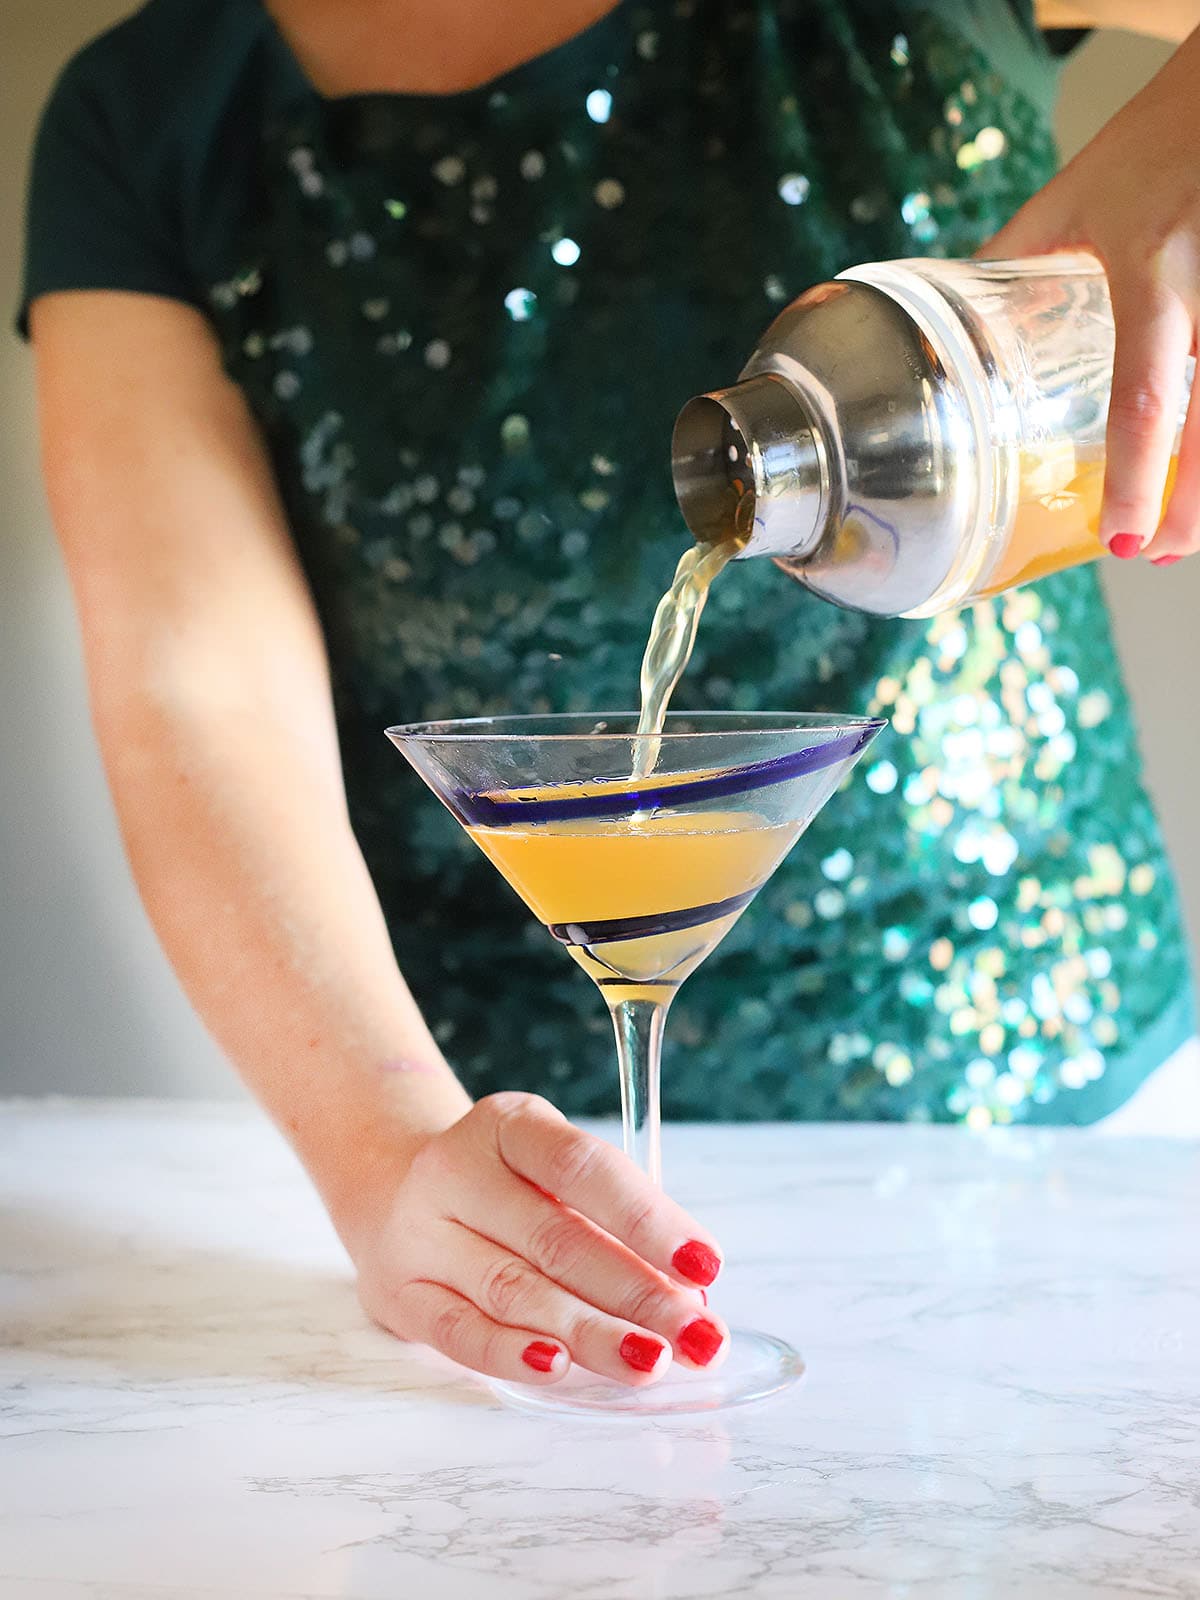 pouring the Tuaca pineapple martini into a martini glass